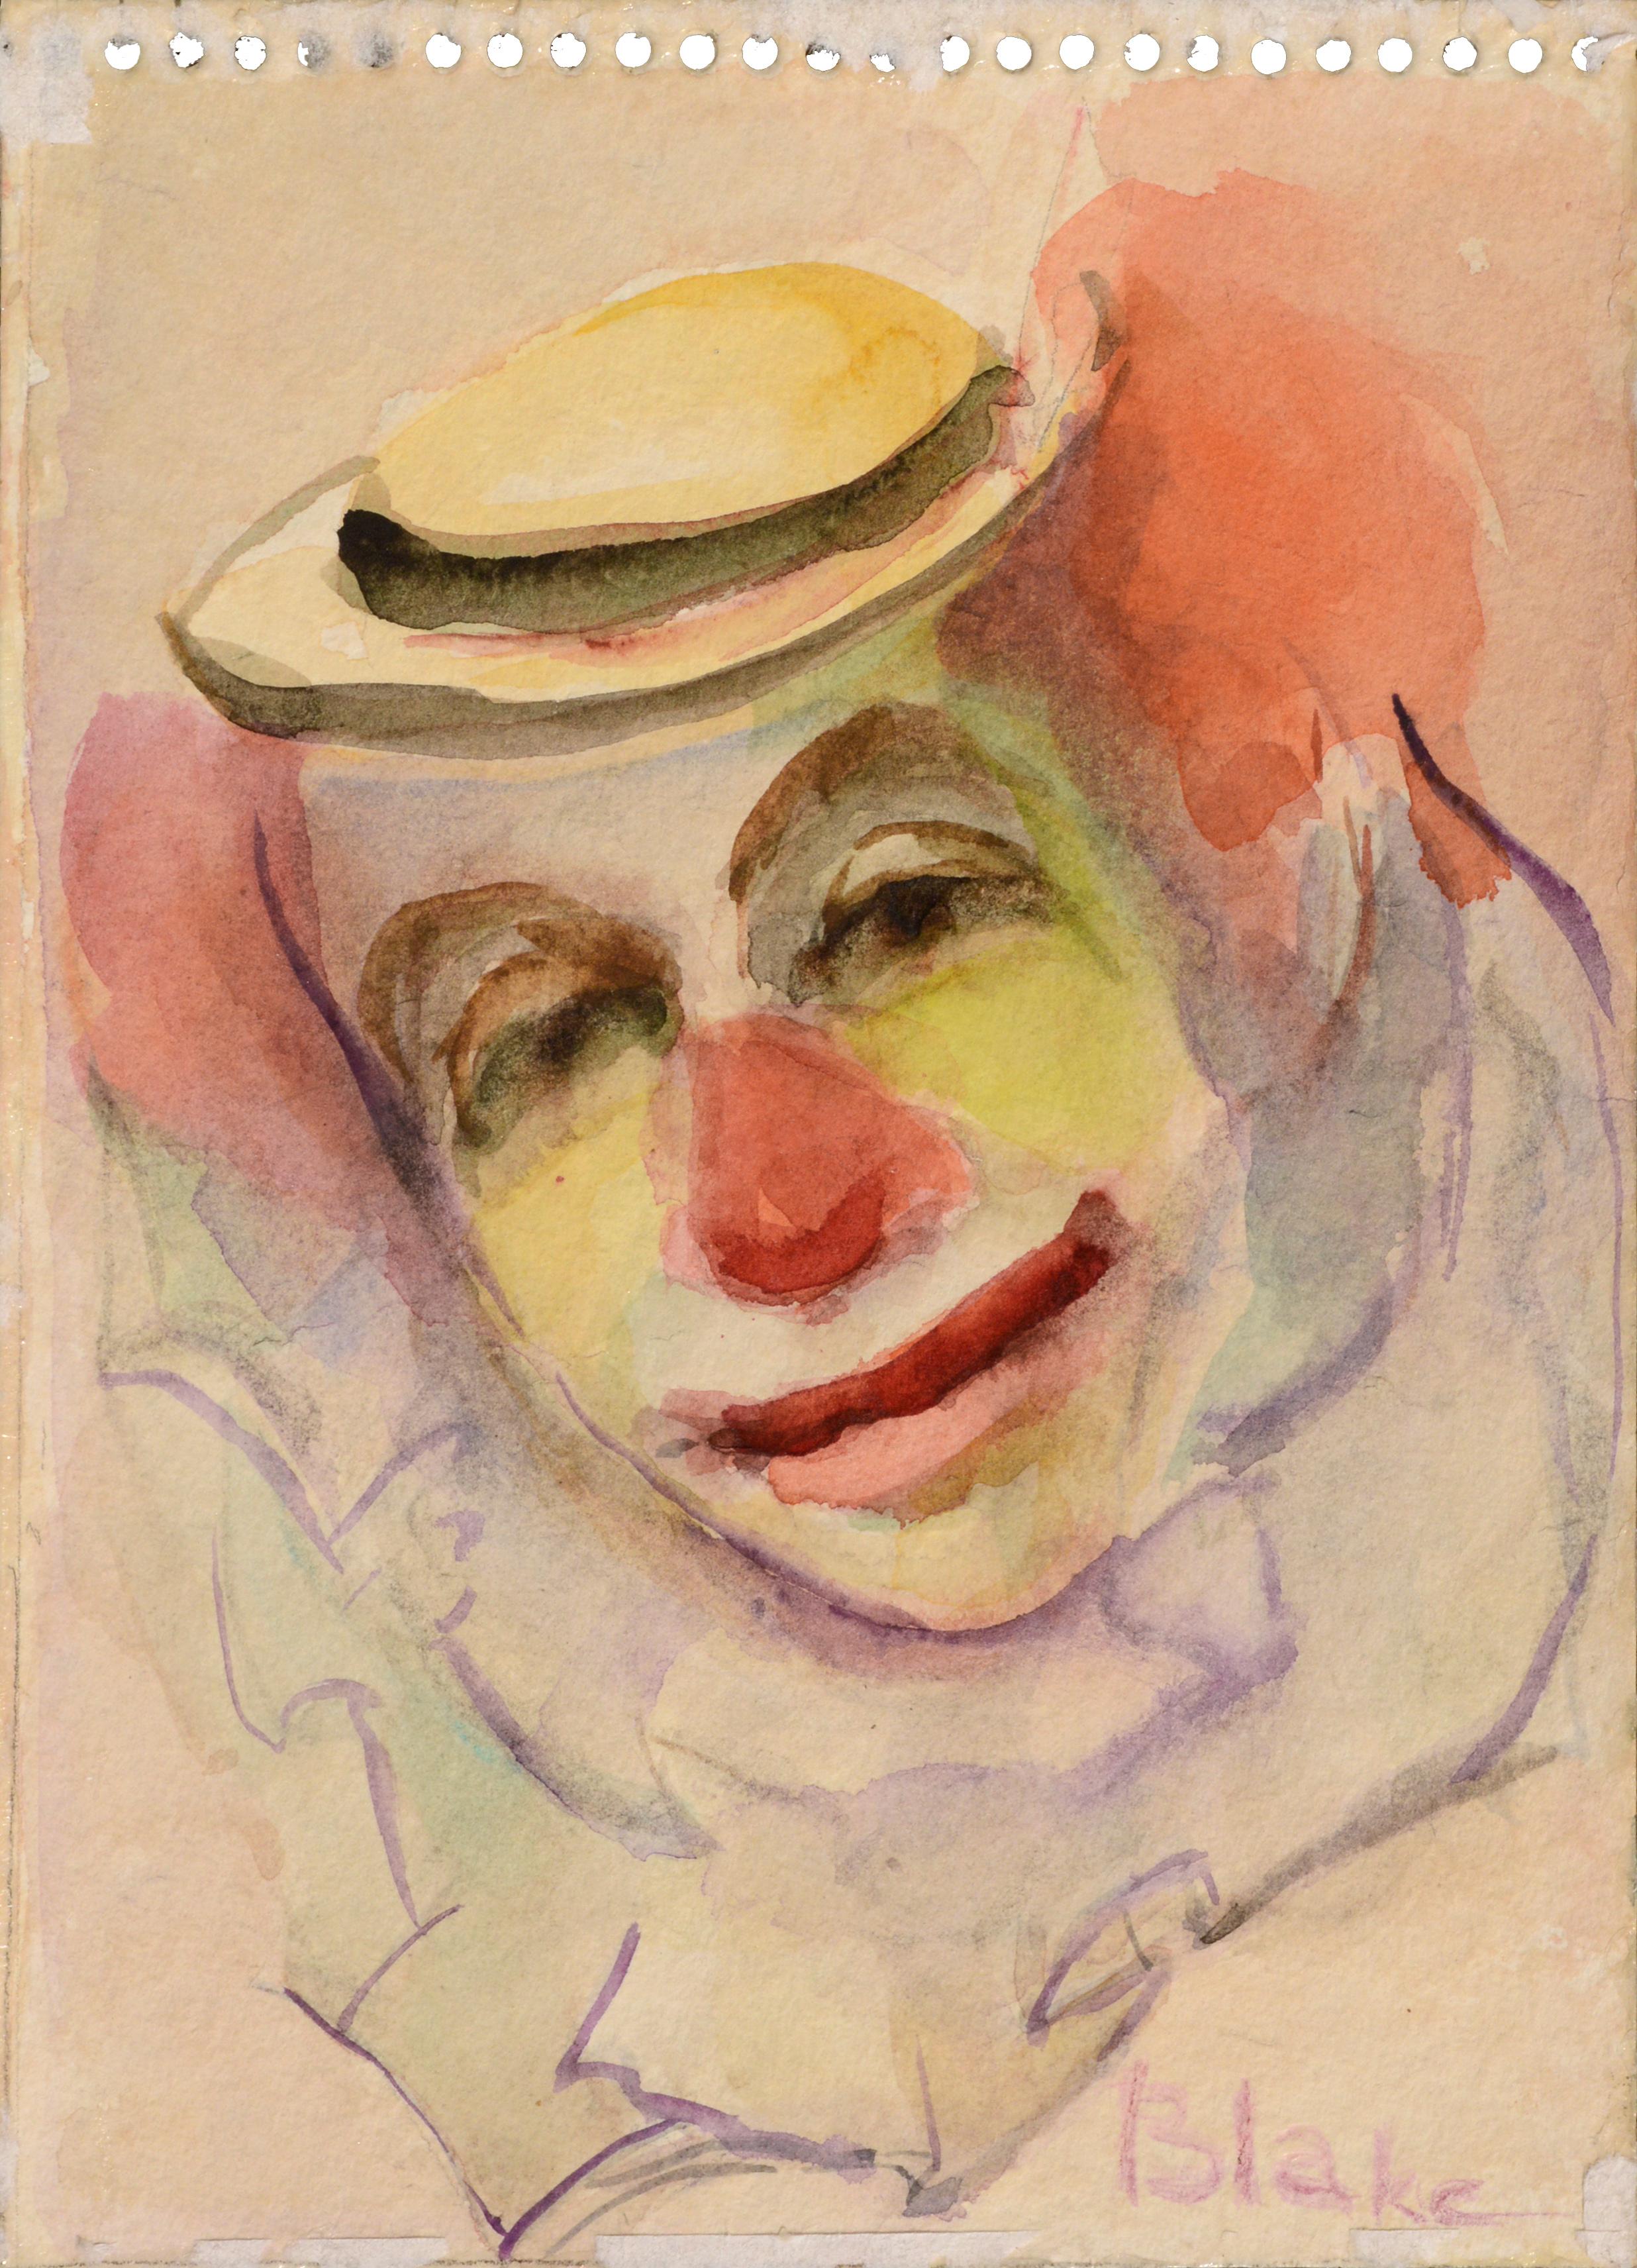 Clown with a Hat (Clown Portrait #9)